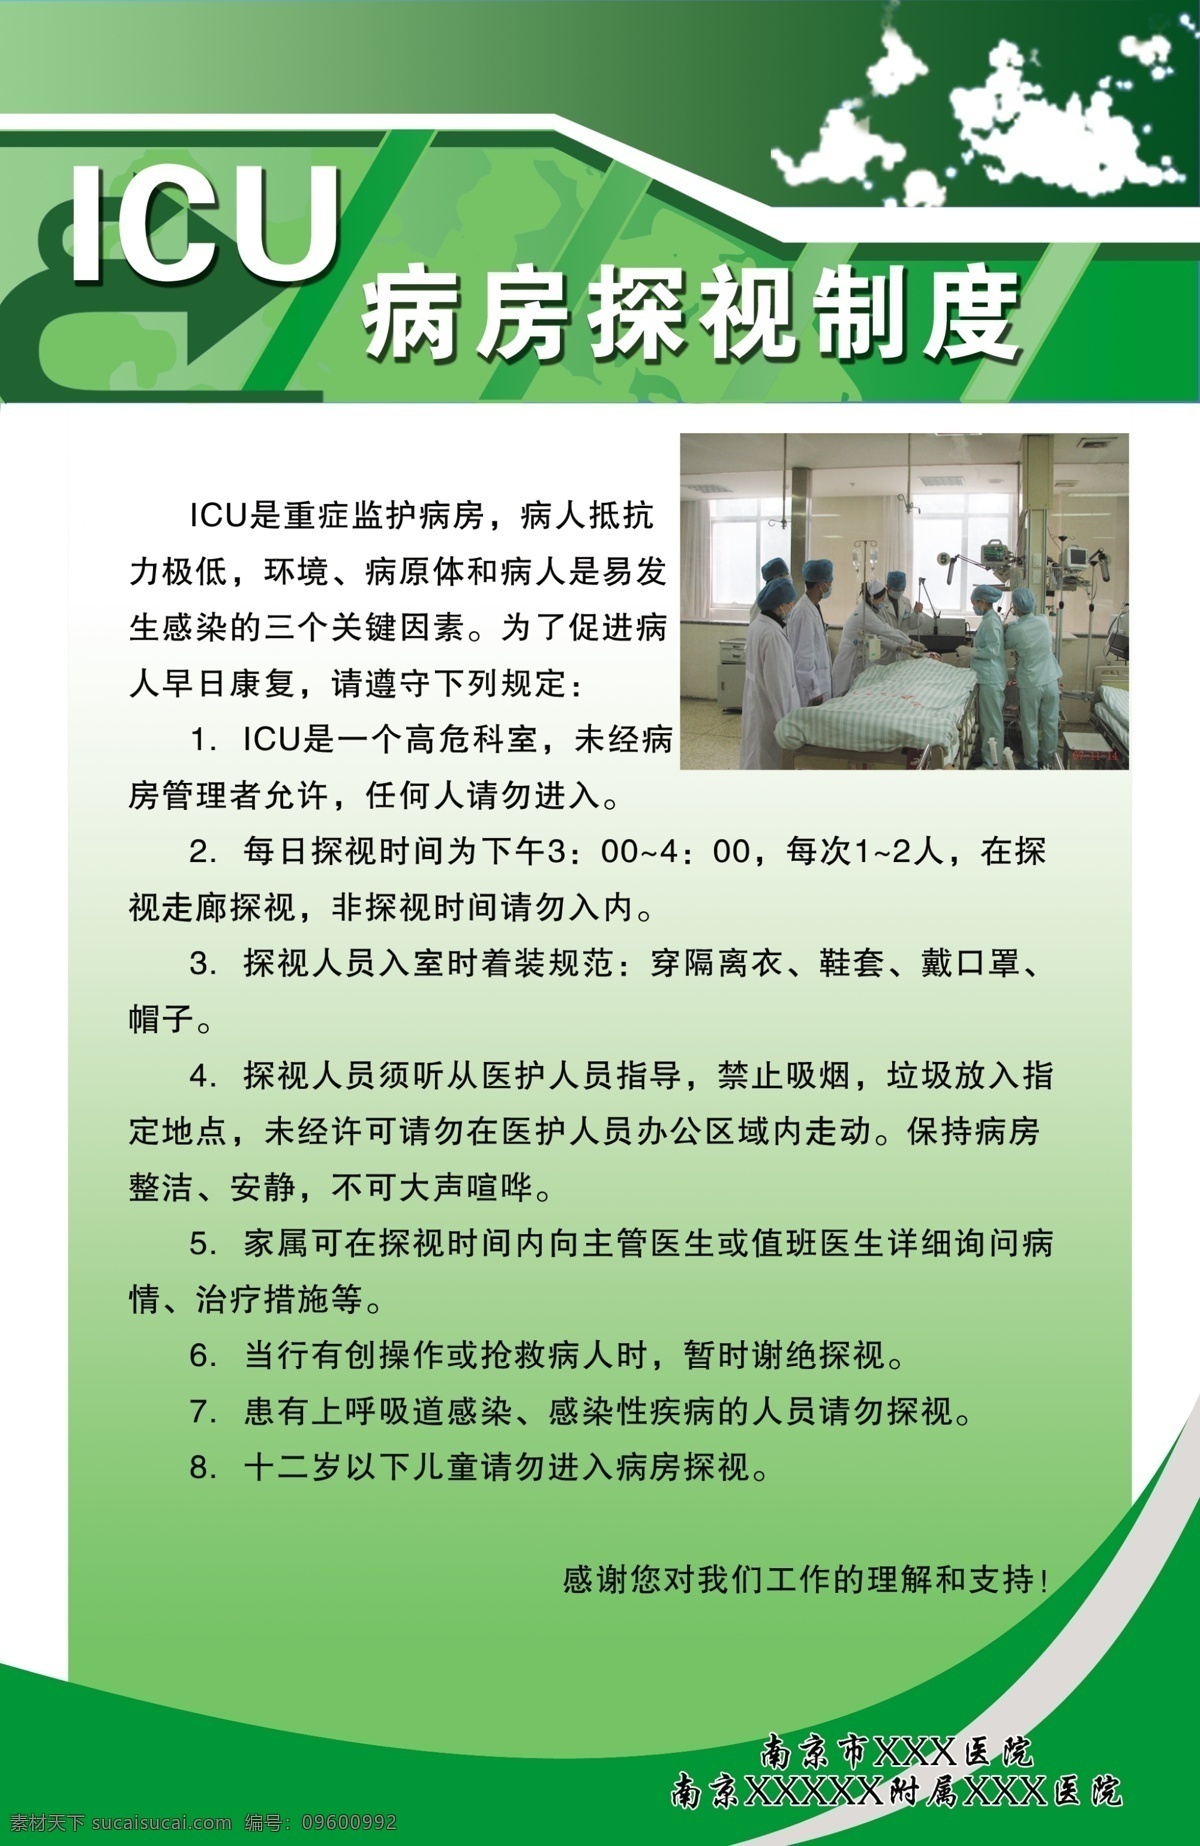 医院制度模板 制度模板 绿色 医院 icu制度 展板模板 广告设计模板 源文件